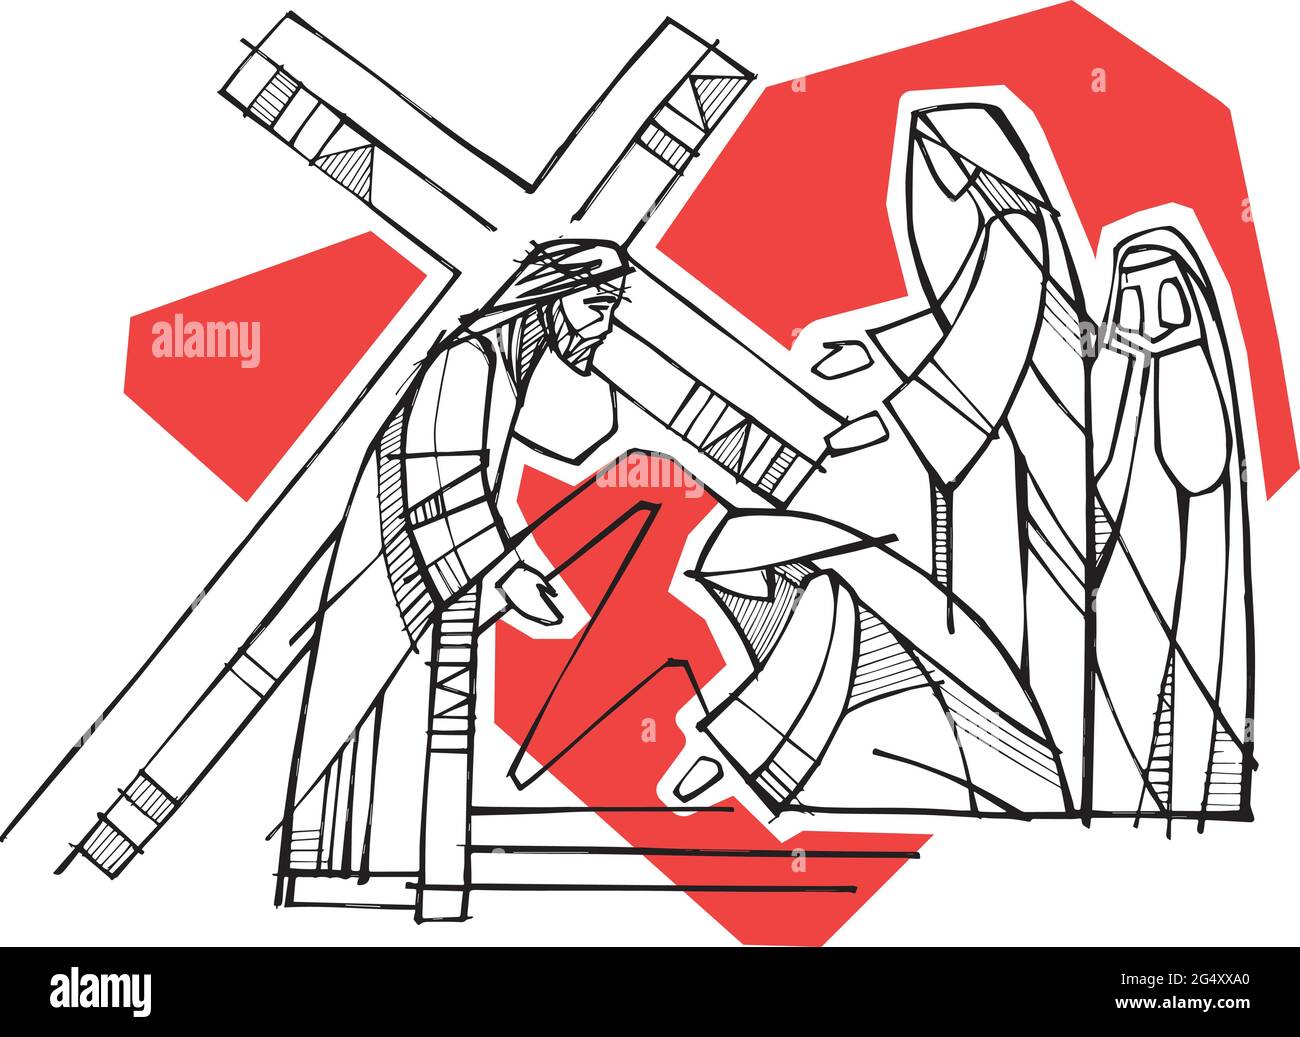 Illustration ou dessin à la main de Jésus-Christ et de la Vierge Marie et d'autres femmes à la Crucifixion Illustration de Vecteur